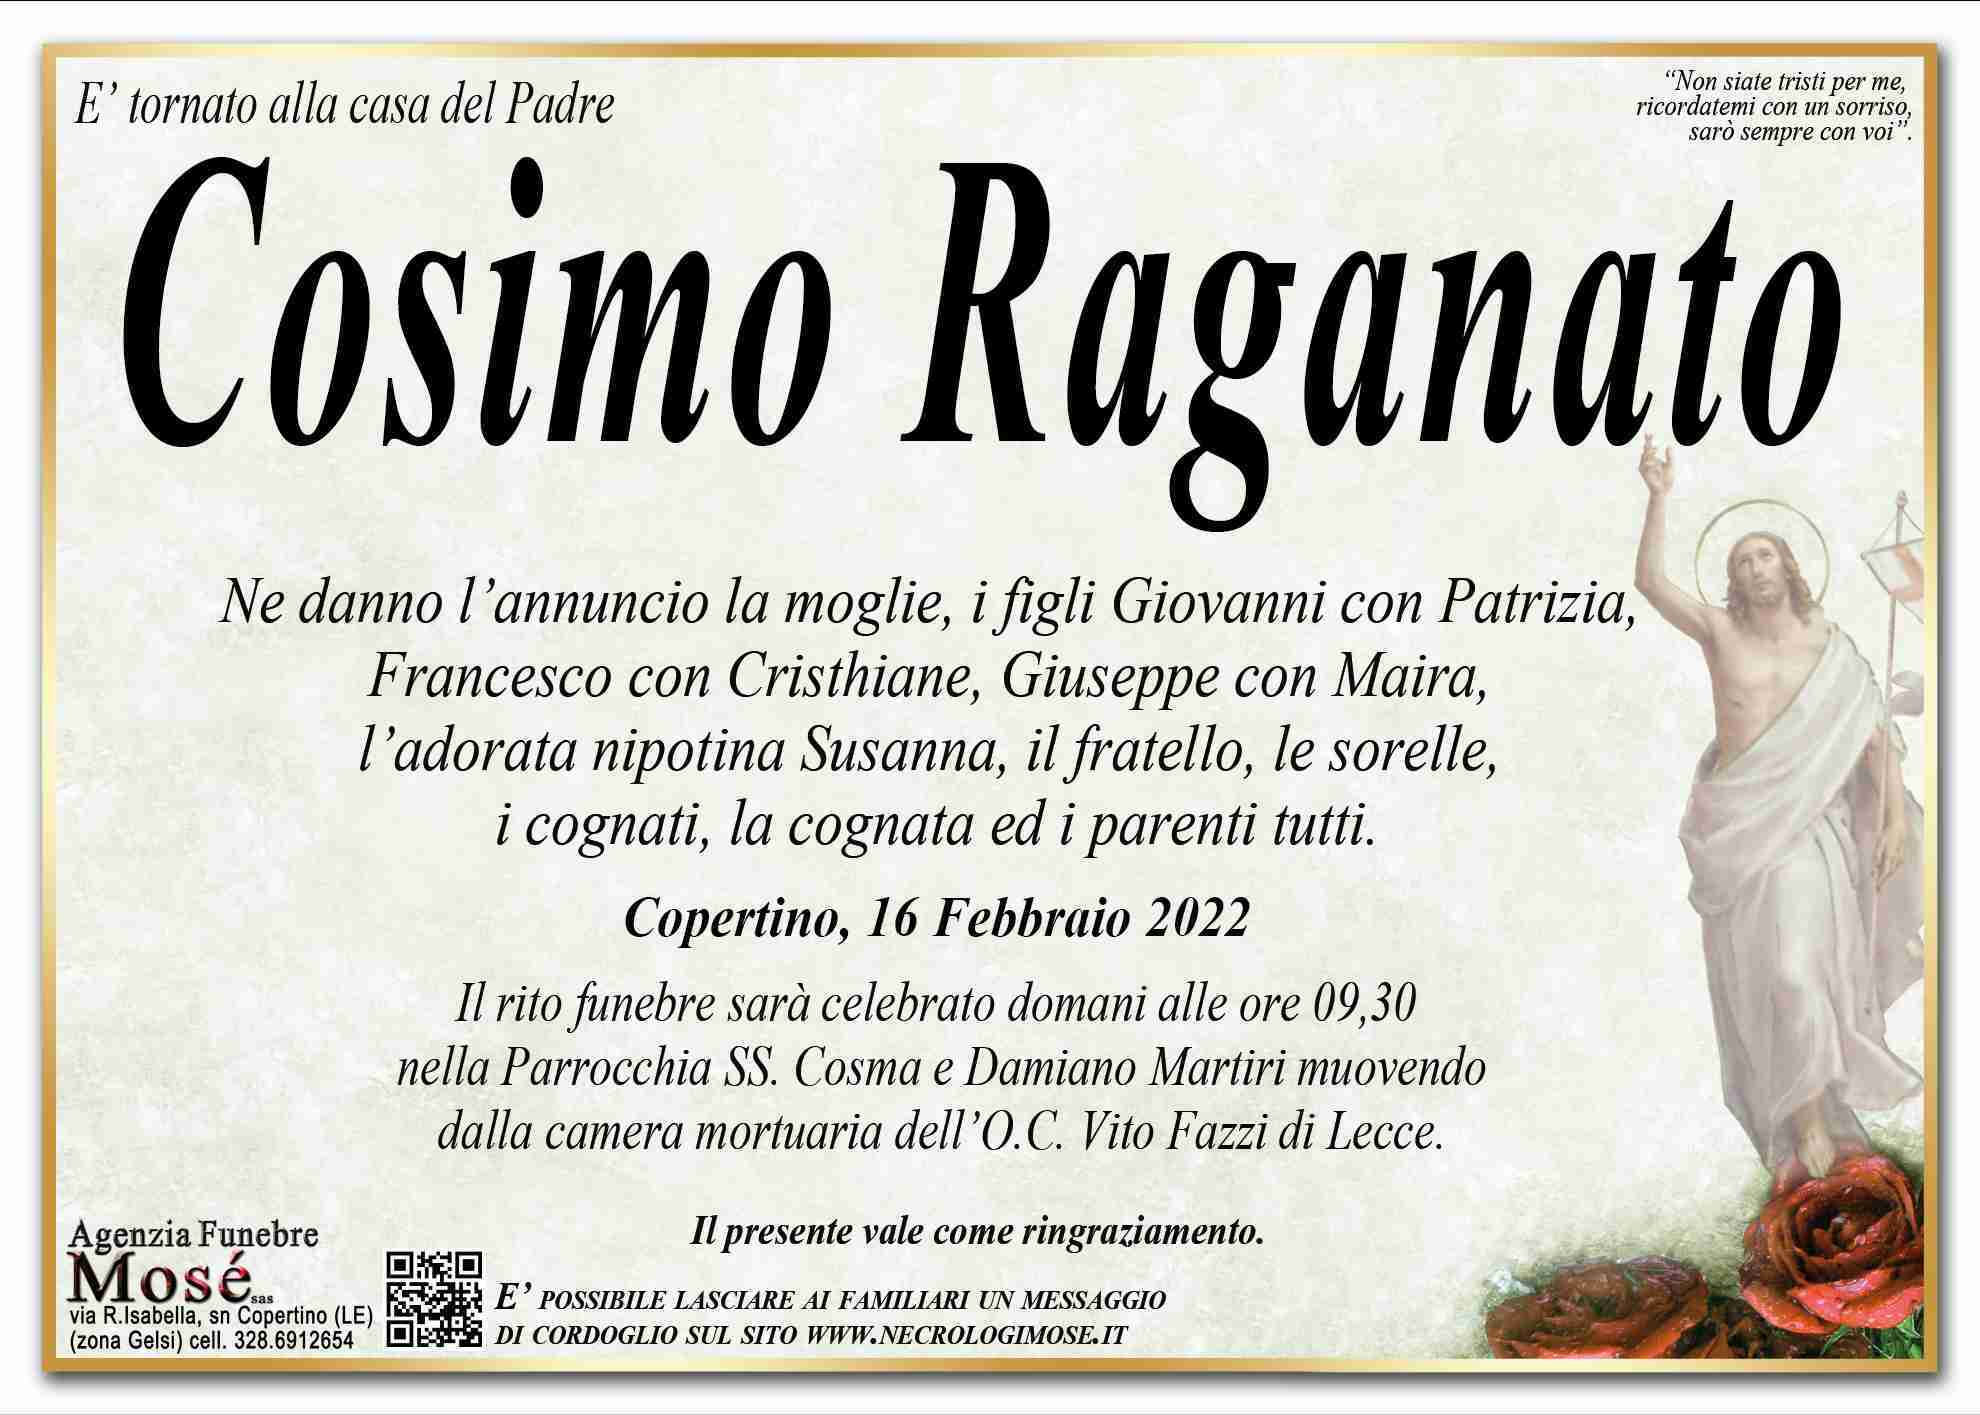 Cosimo Raganato